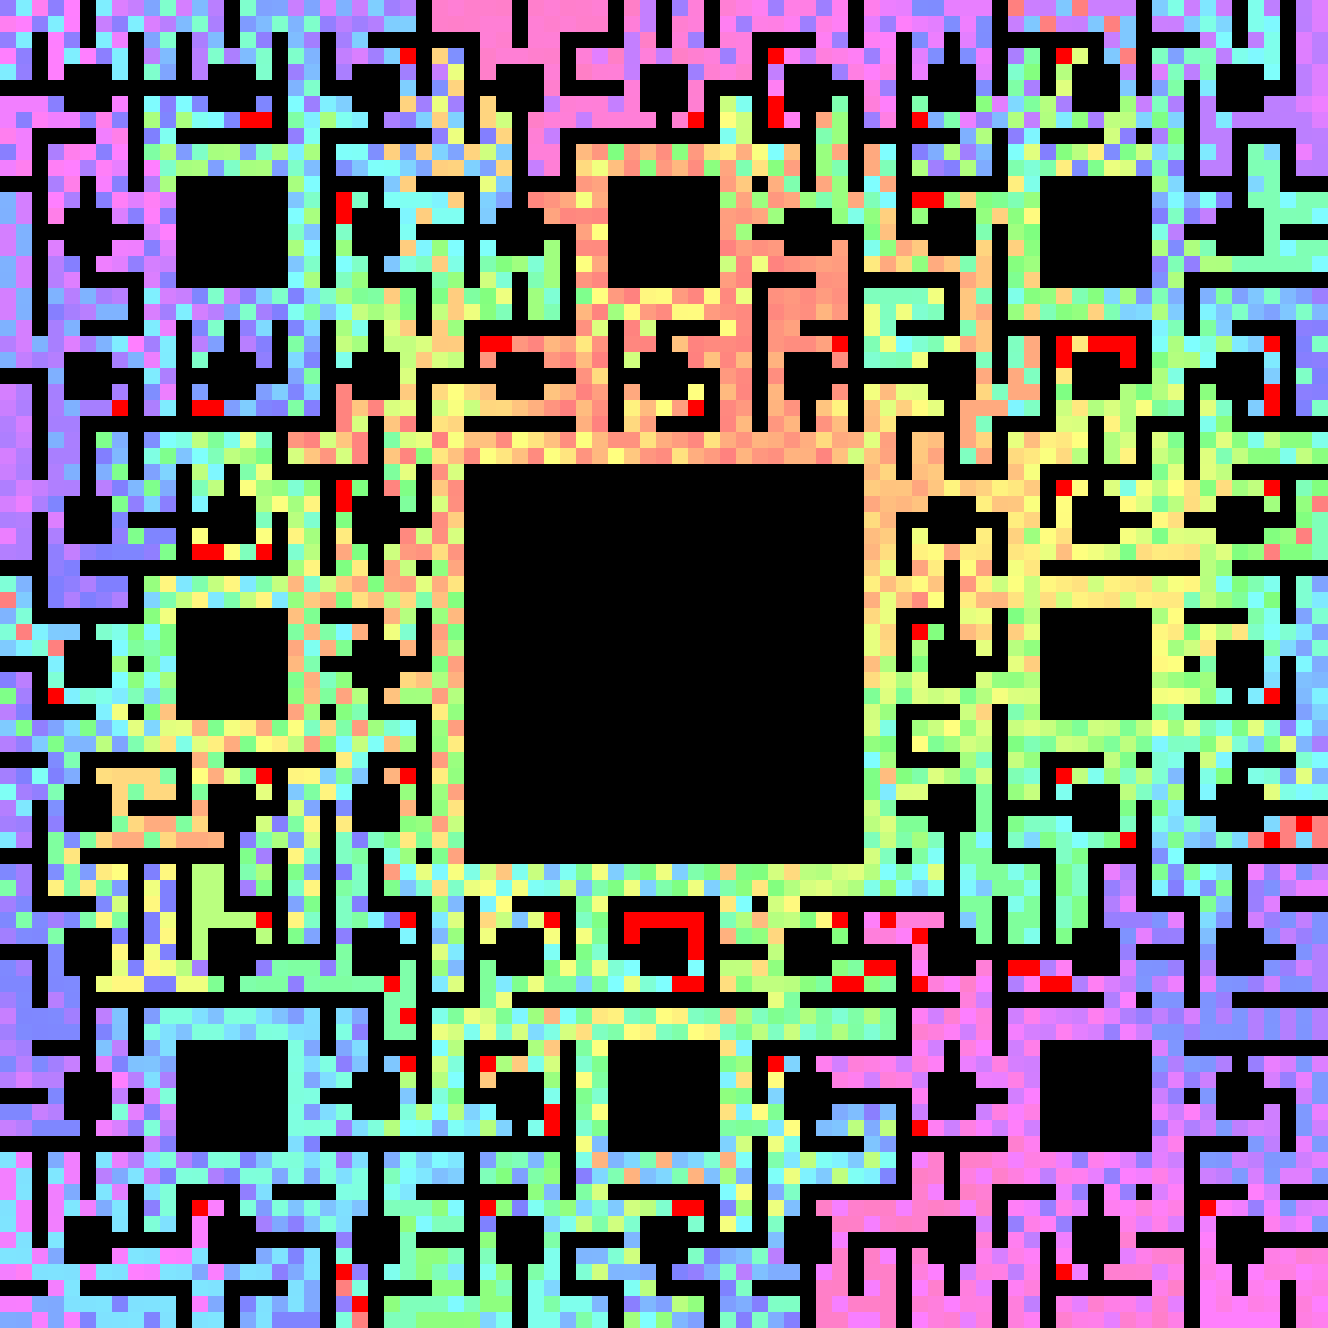 Hue Rainbow Maze Fixed